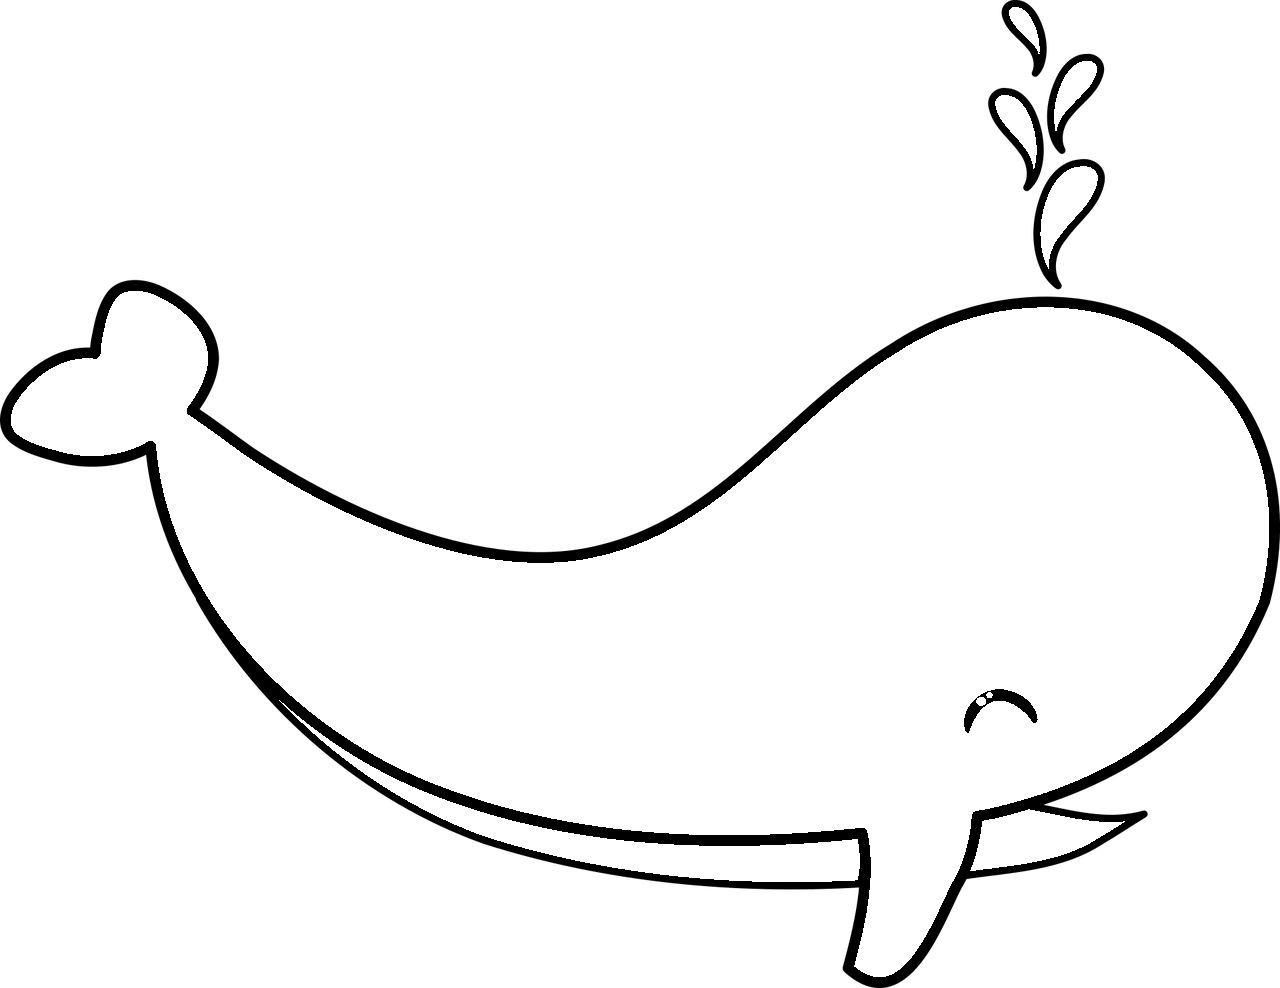 Dibujo para colorear de una ballena